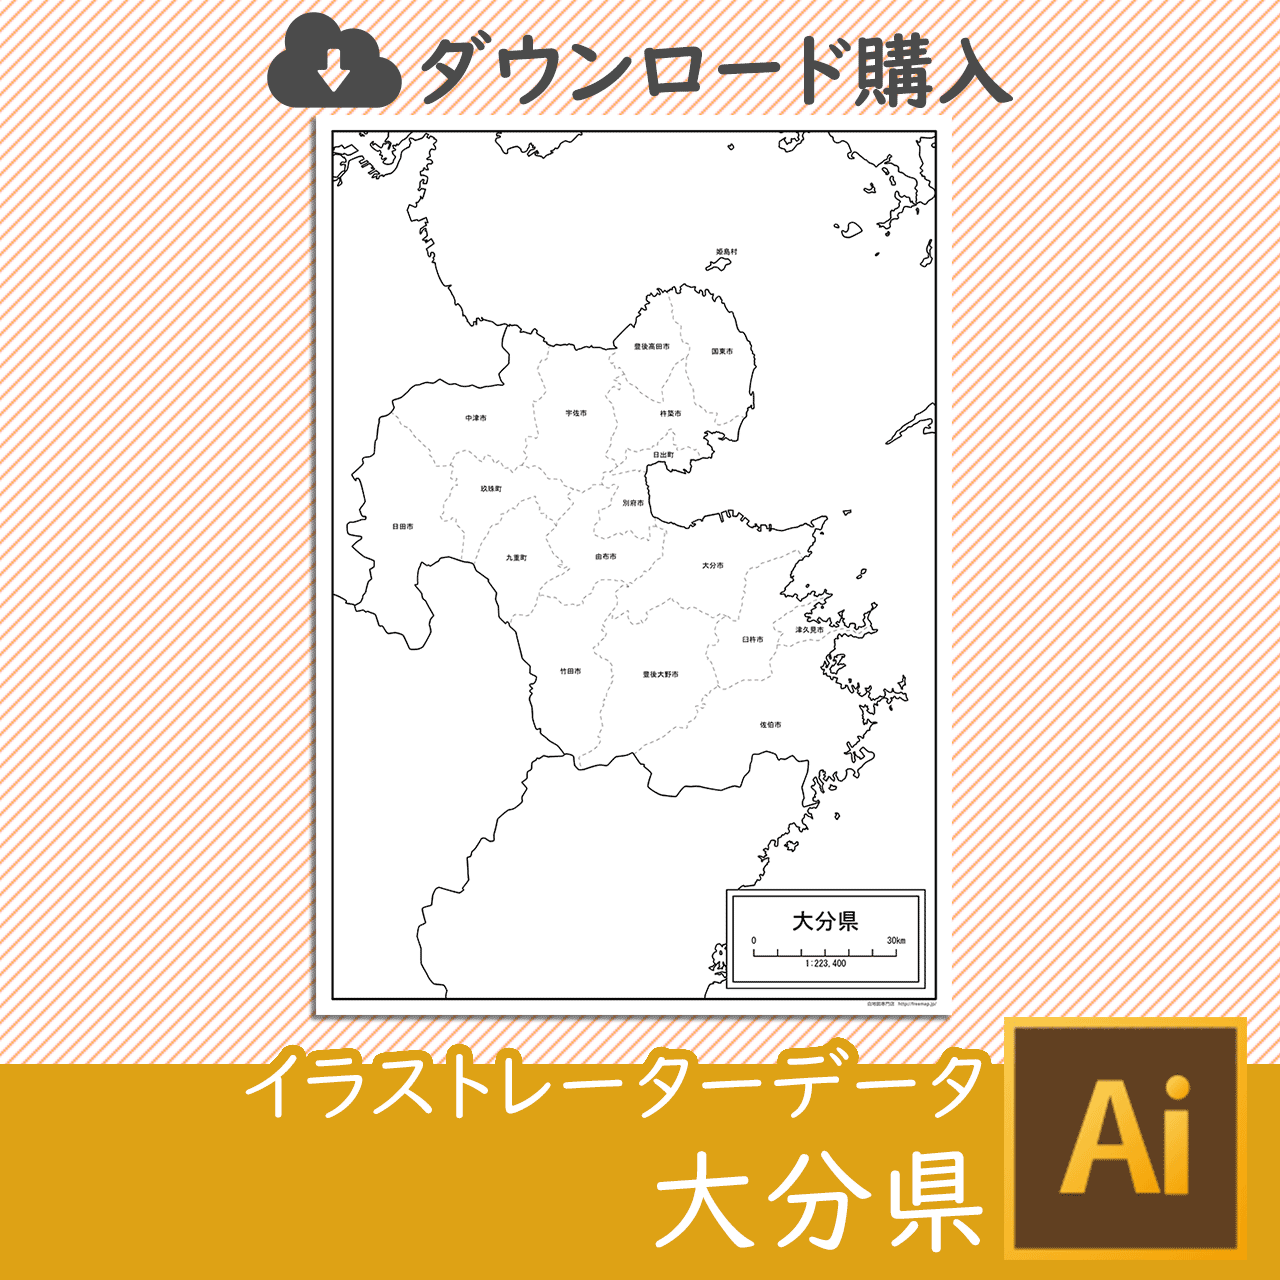 大分県のaiデータのサムネイル画像